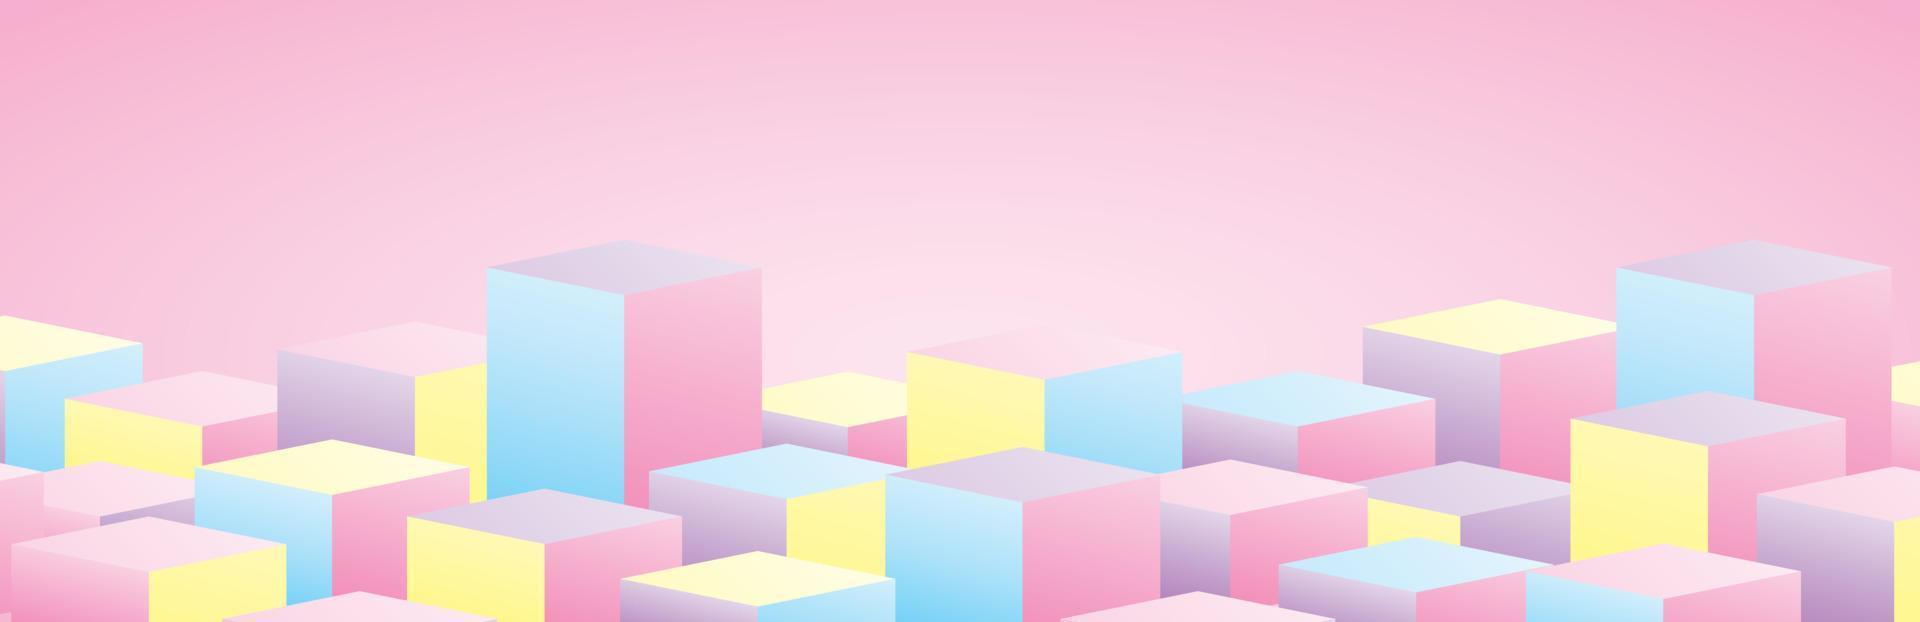 pódios de exibição de produto quadrado pastel colorido vetor gráfico de ilustração 3d para colocar objeto em fundo rosa doce